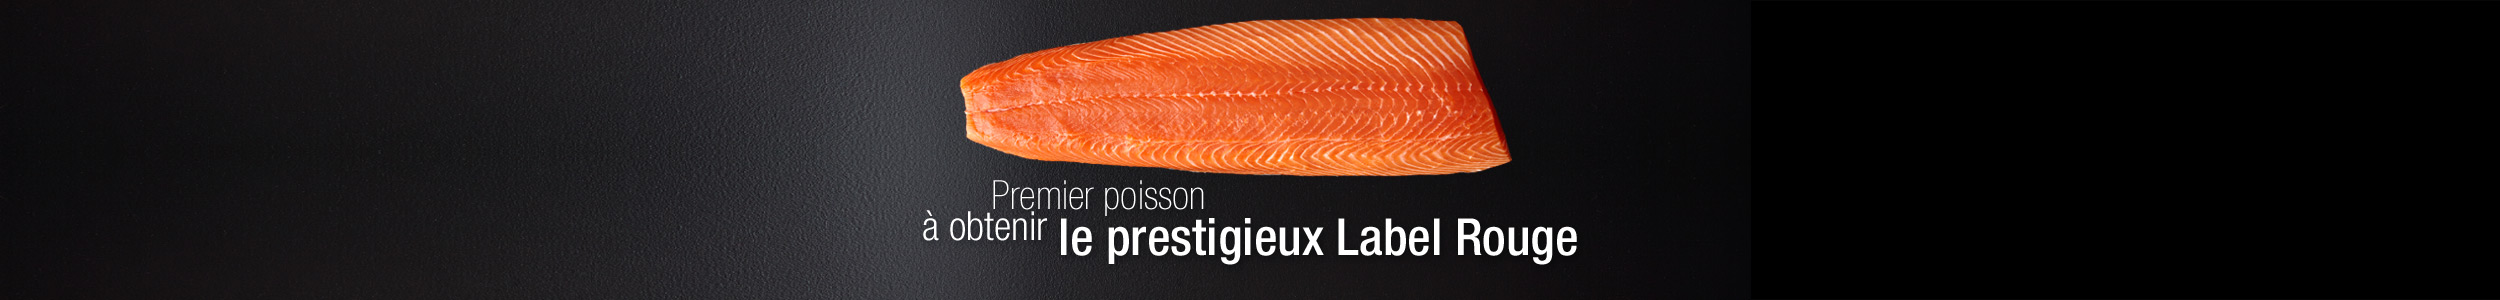 La saumon écossais label rouge est le premier poisson à obtenir le prestigieux Label Rouge